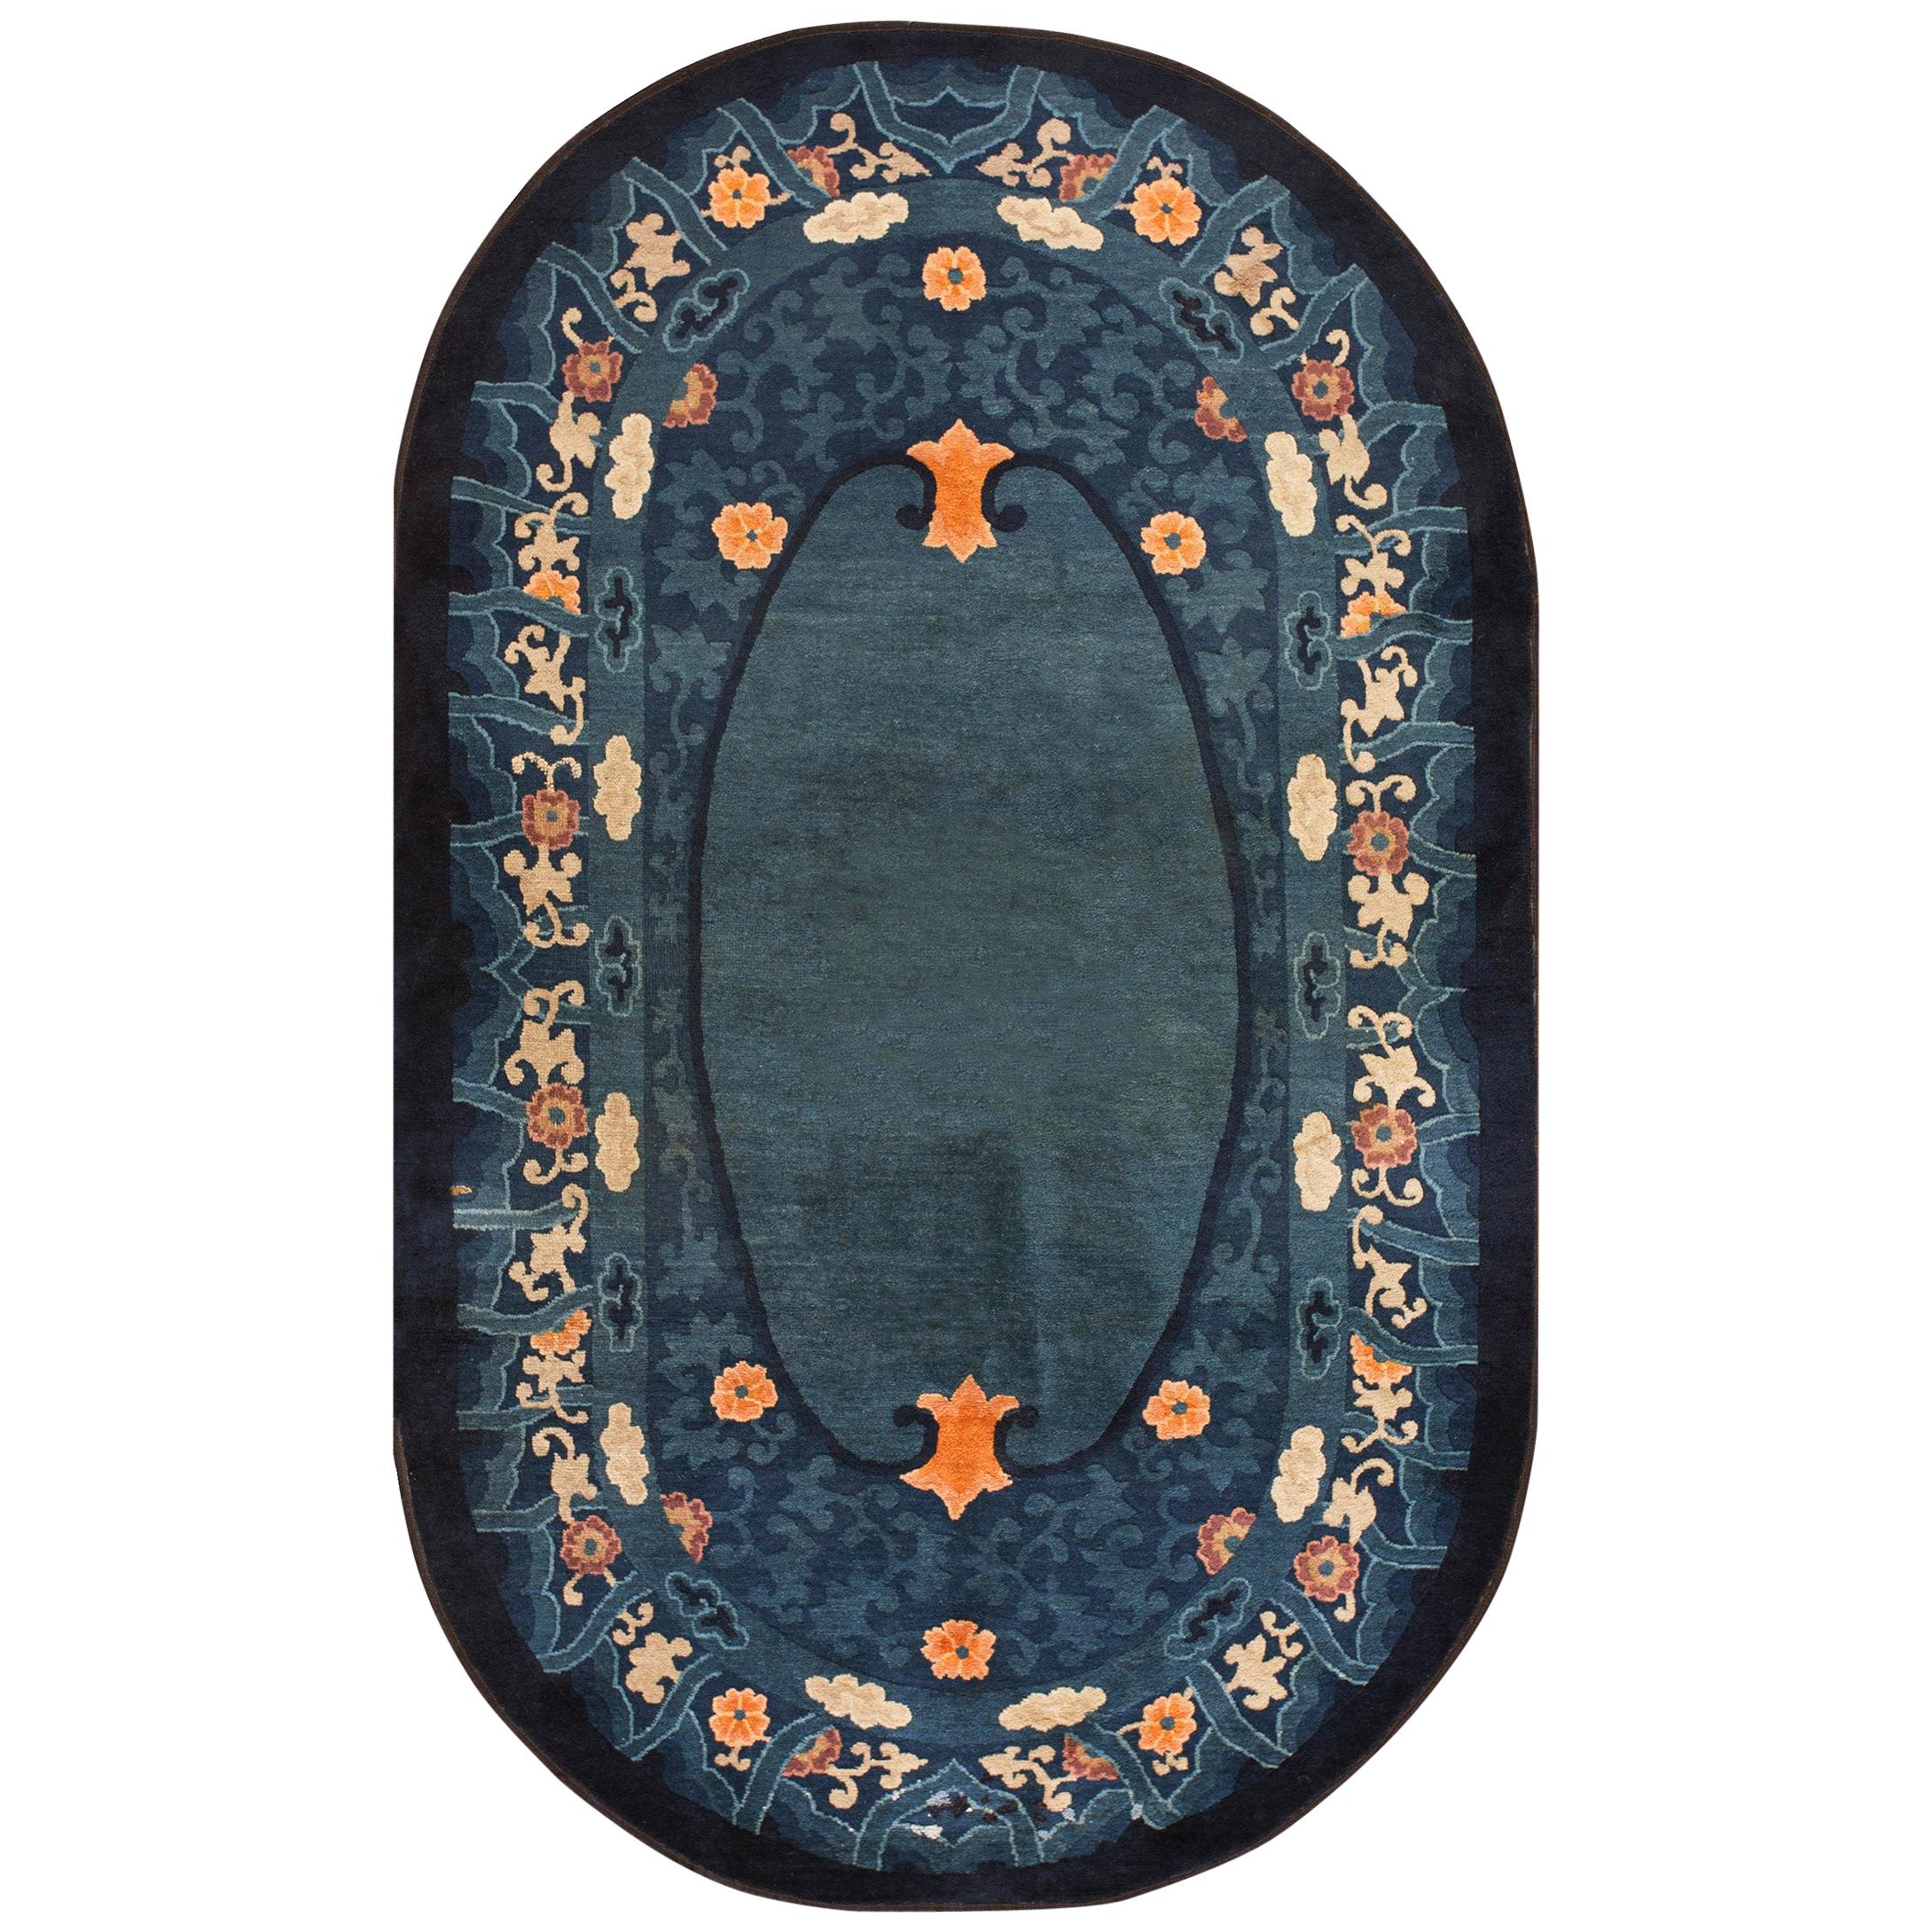 Ovaler chinesischer Peking-Teppich des frühen 20. Jahrhunderts ( 4' x 6'8" - 122 x 203")